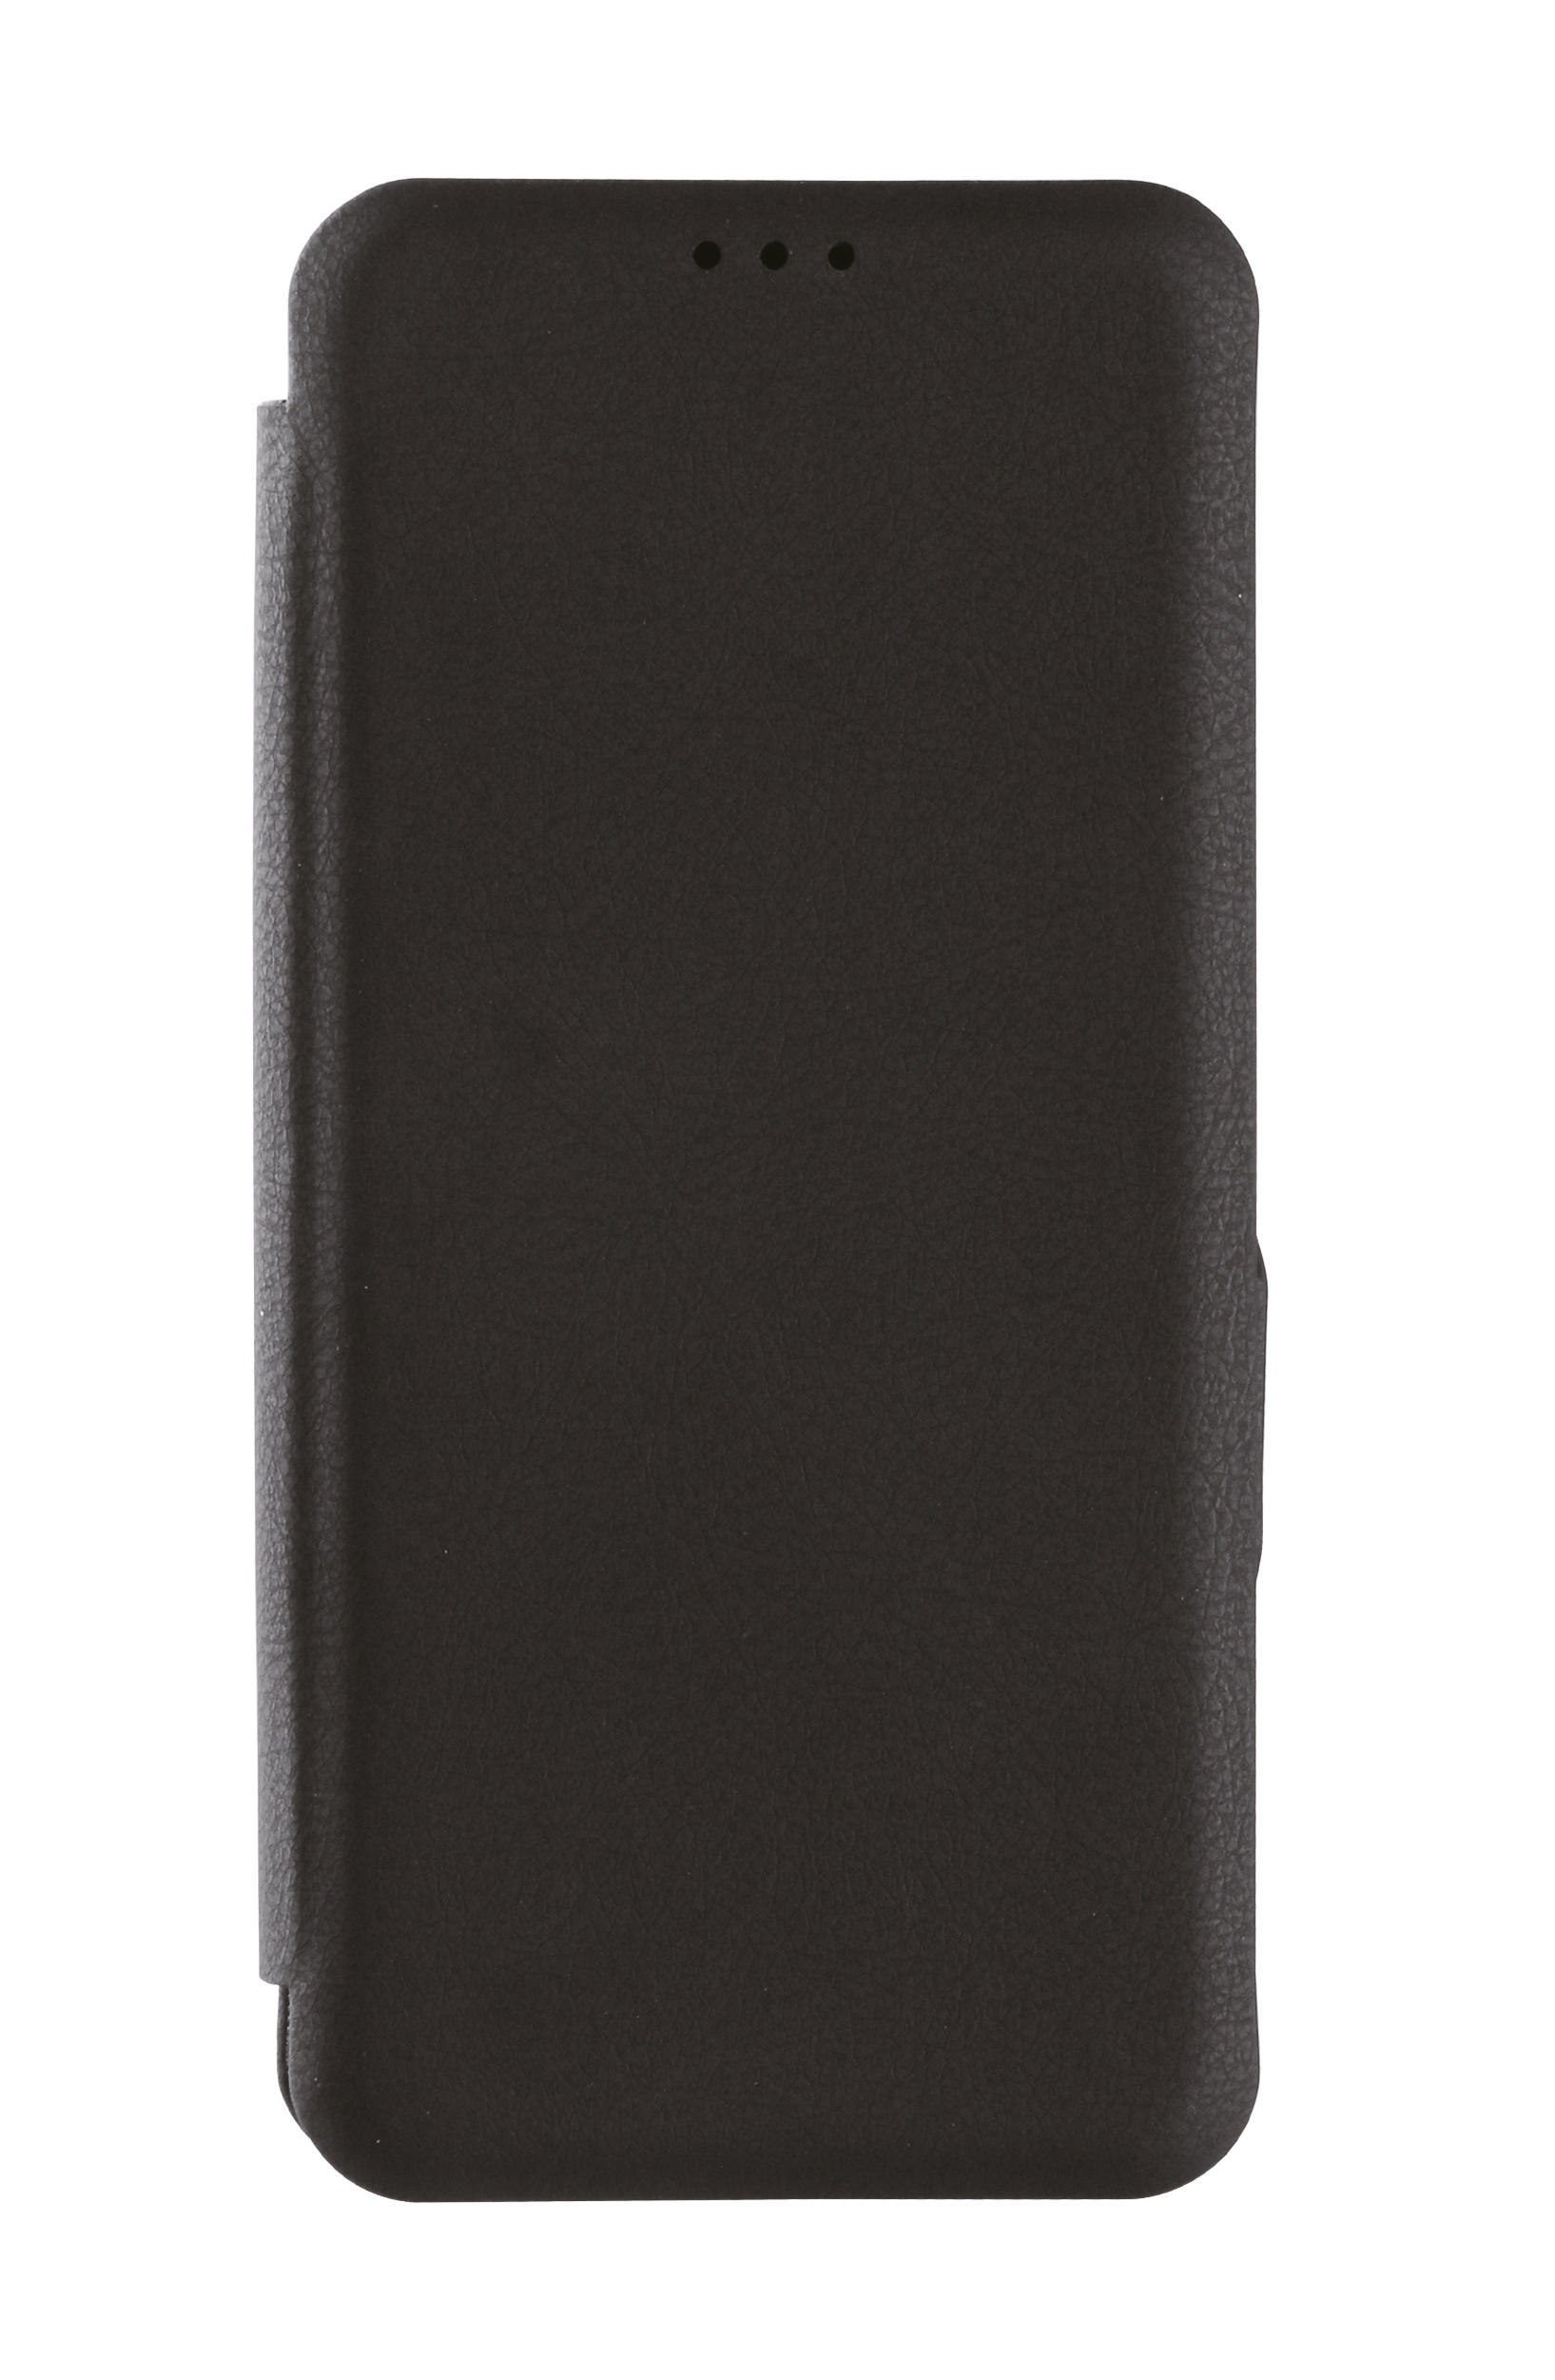 VIVANCO Casual Wallet, Galaxy S20+, Bookcover, Schwarz Samsung